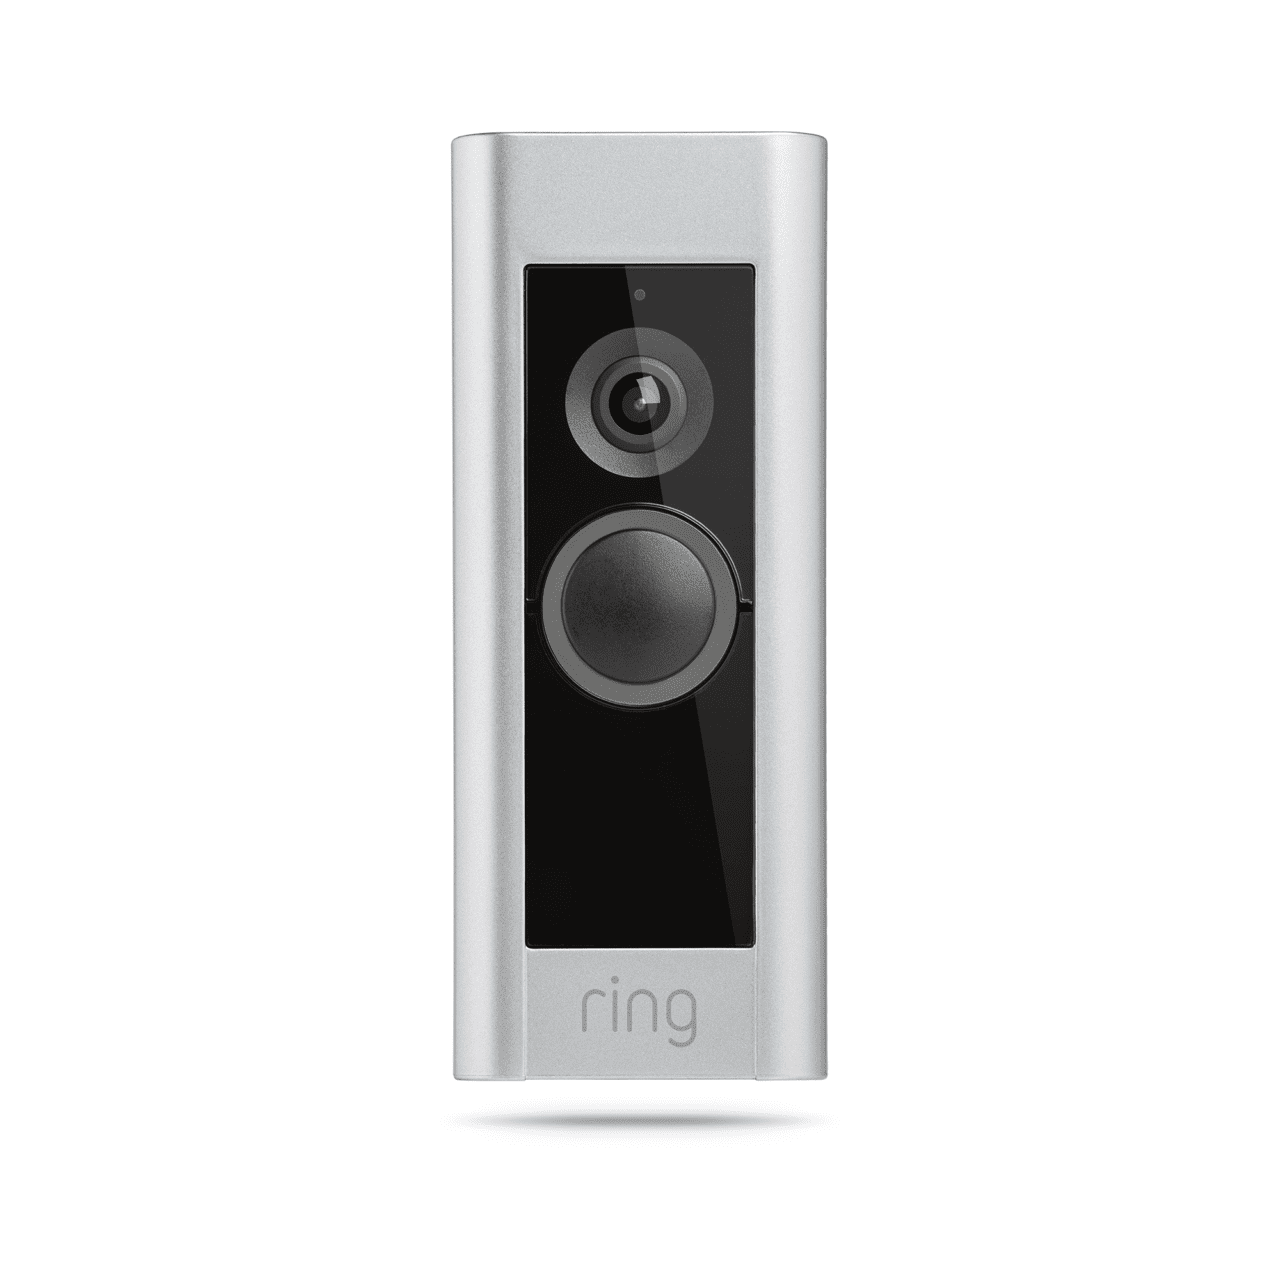 Choosing the Right Ring Video Doorbell 